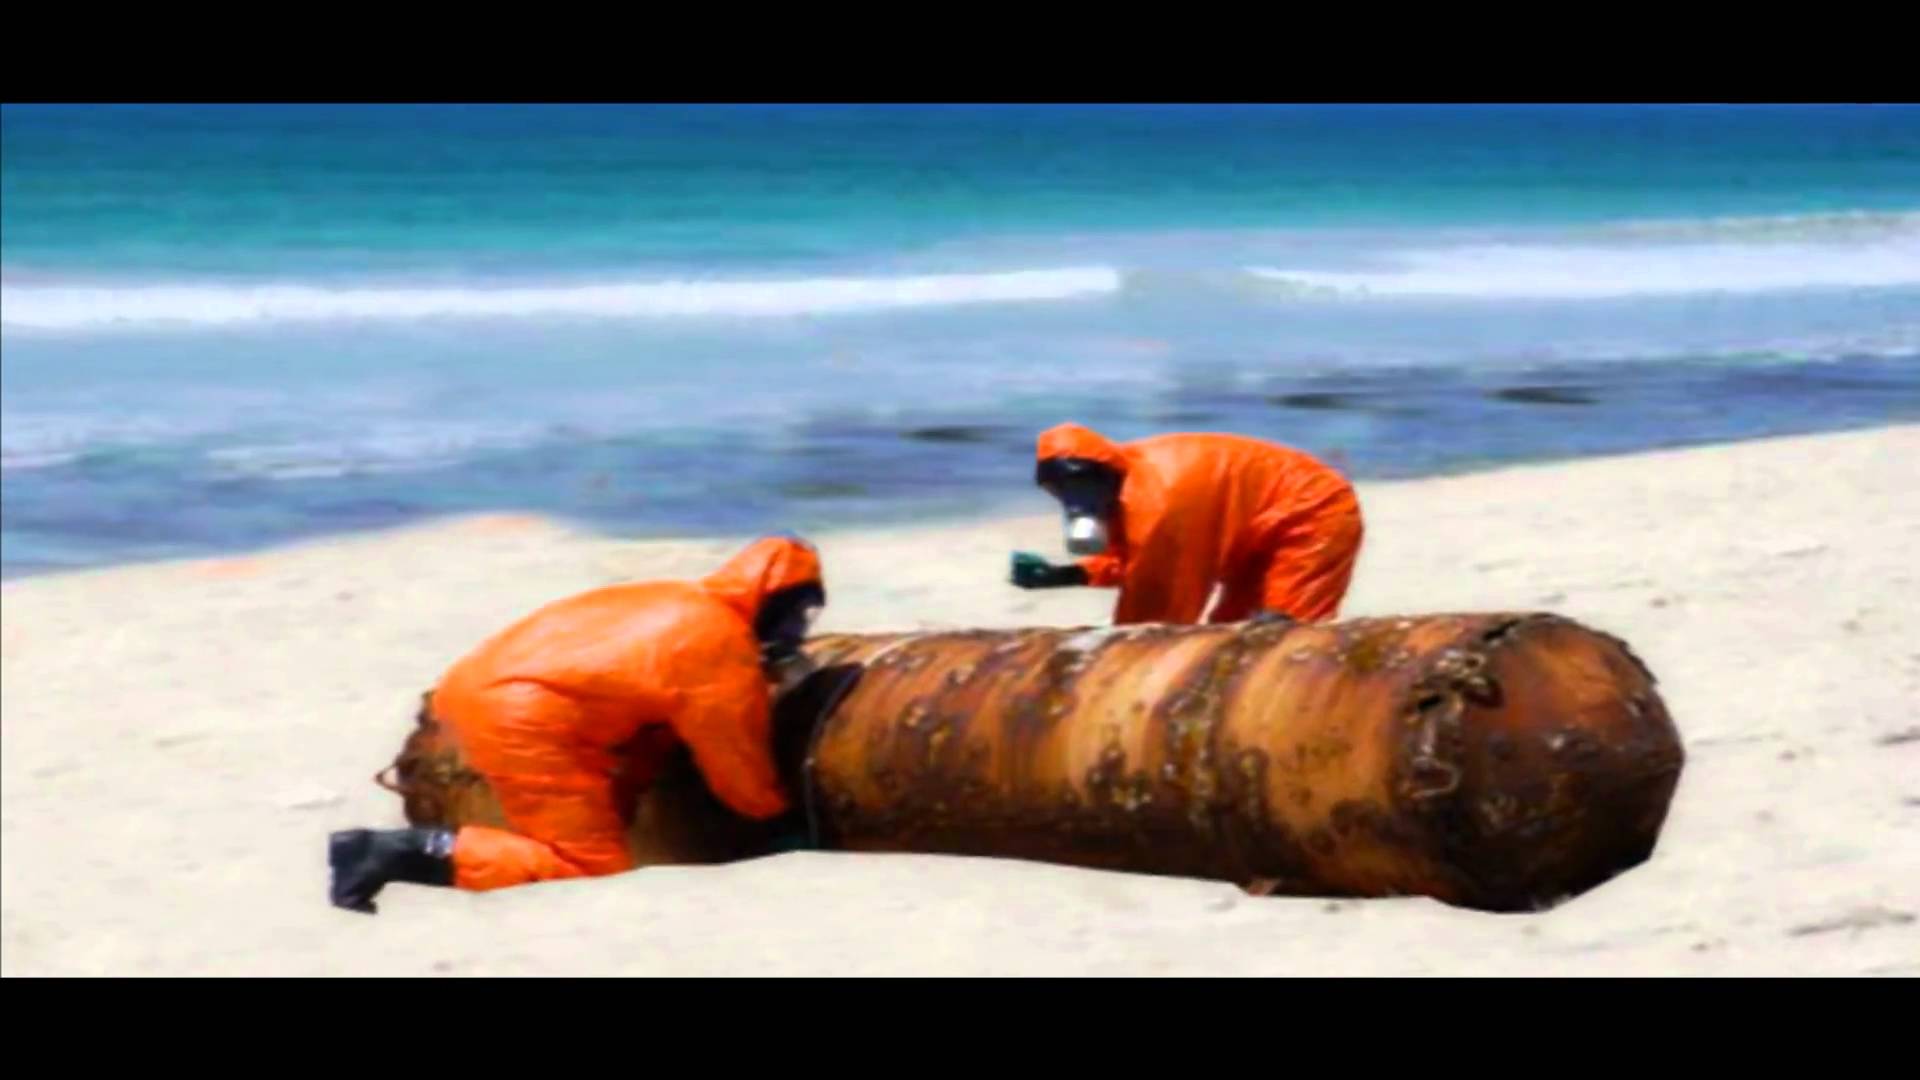 Somalia: Dumping Harmful Toxic waste, Somalia’s largely unguarded Coastline.